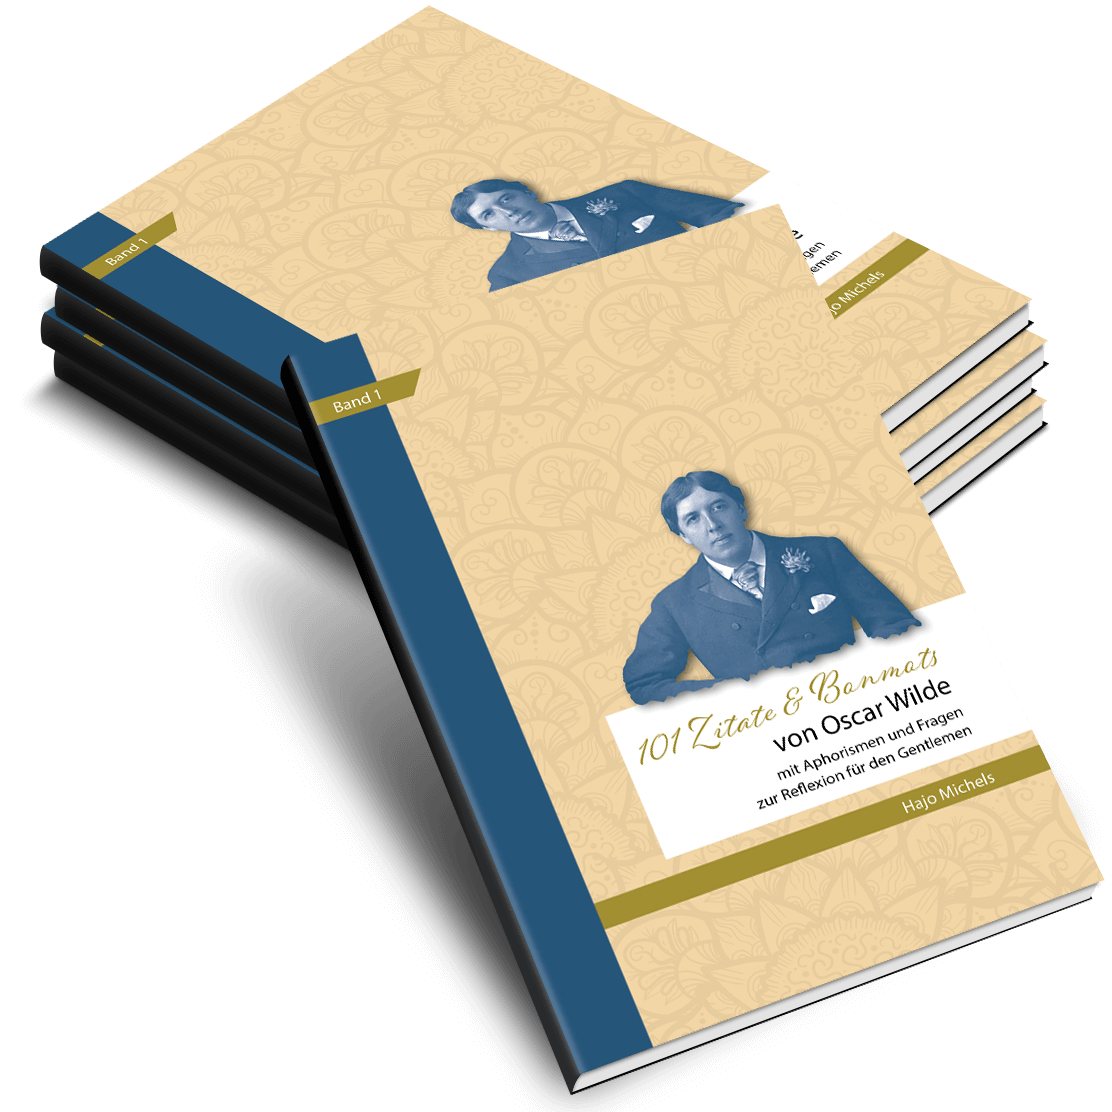 101 Zitate & Bonmots von Oscar Wilde: Mit Aphorismen und Fragen zur Reflexion für den Gentleman - Gebundenes Buch - NUR AUF AMAZON VERFÜGBAR